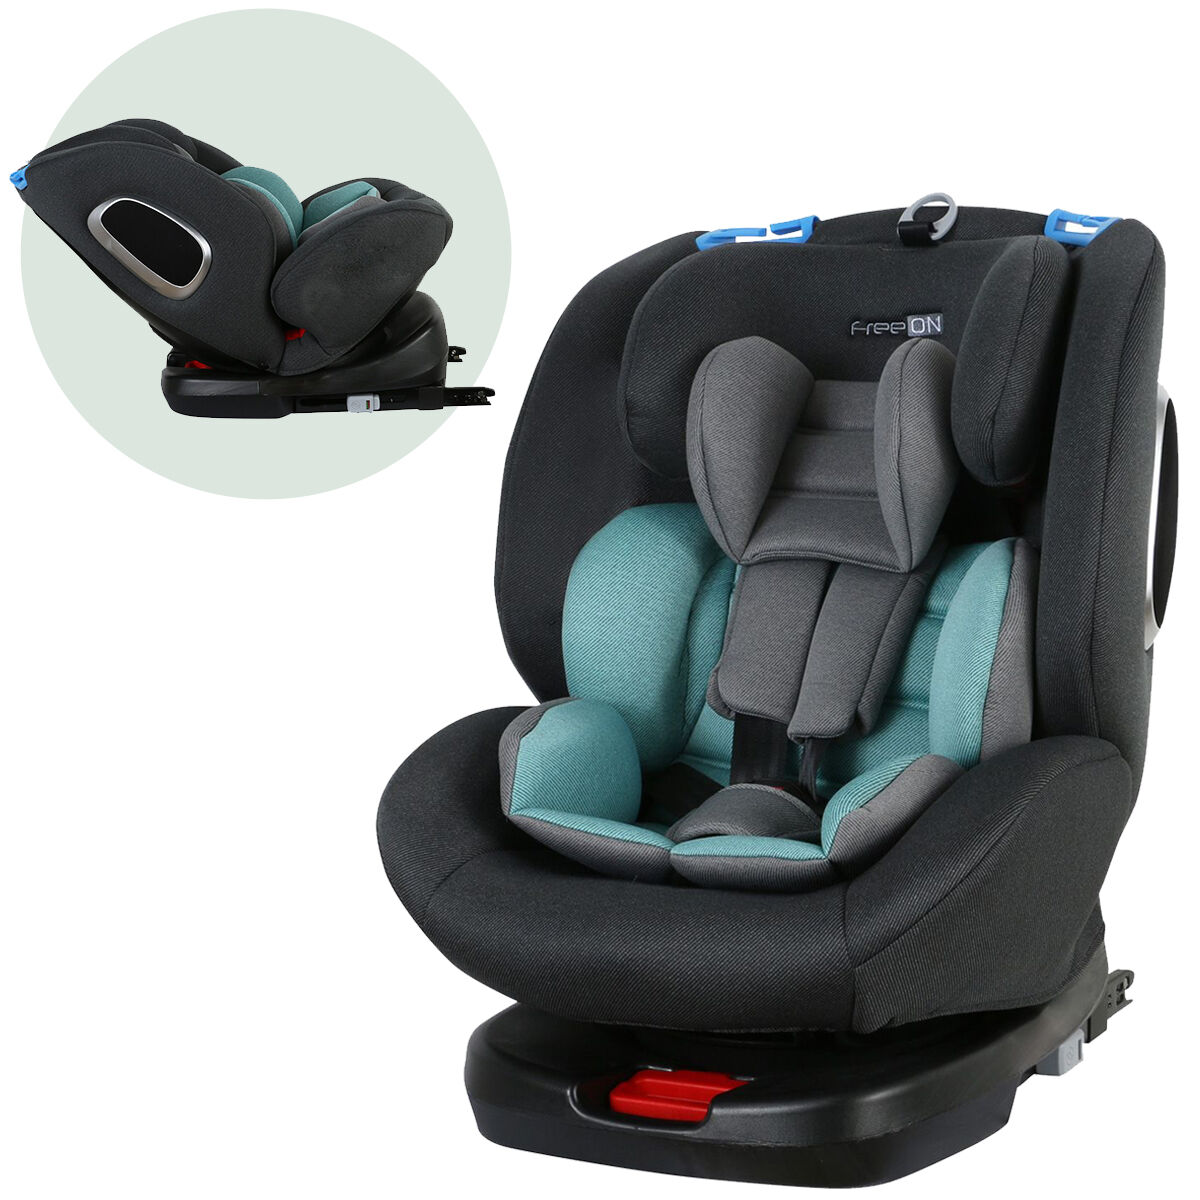 FreeON autostoel Polar 360° draaibaar met isoFix Grijs-Turquoise (0-36kg) - Groep 0-1-2-3 autostoel voor kinderen van 0 tot 12 jaar | Koter